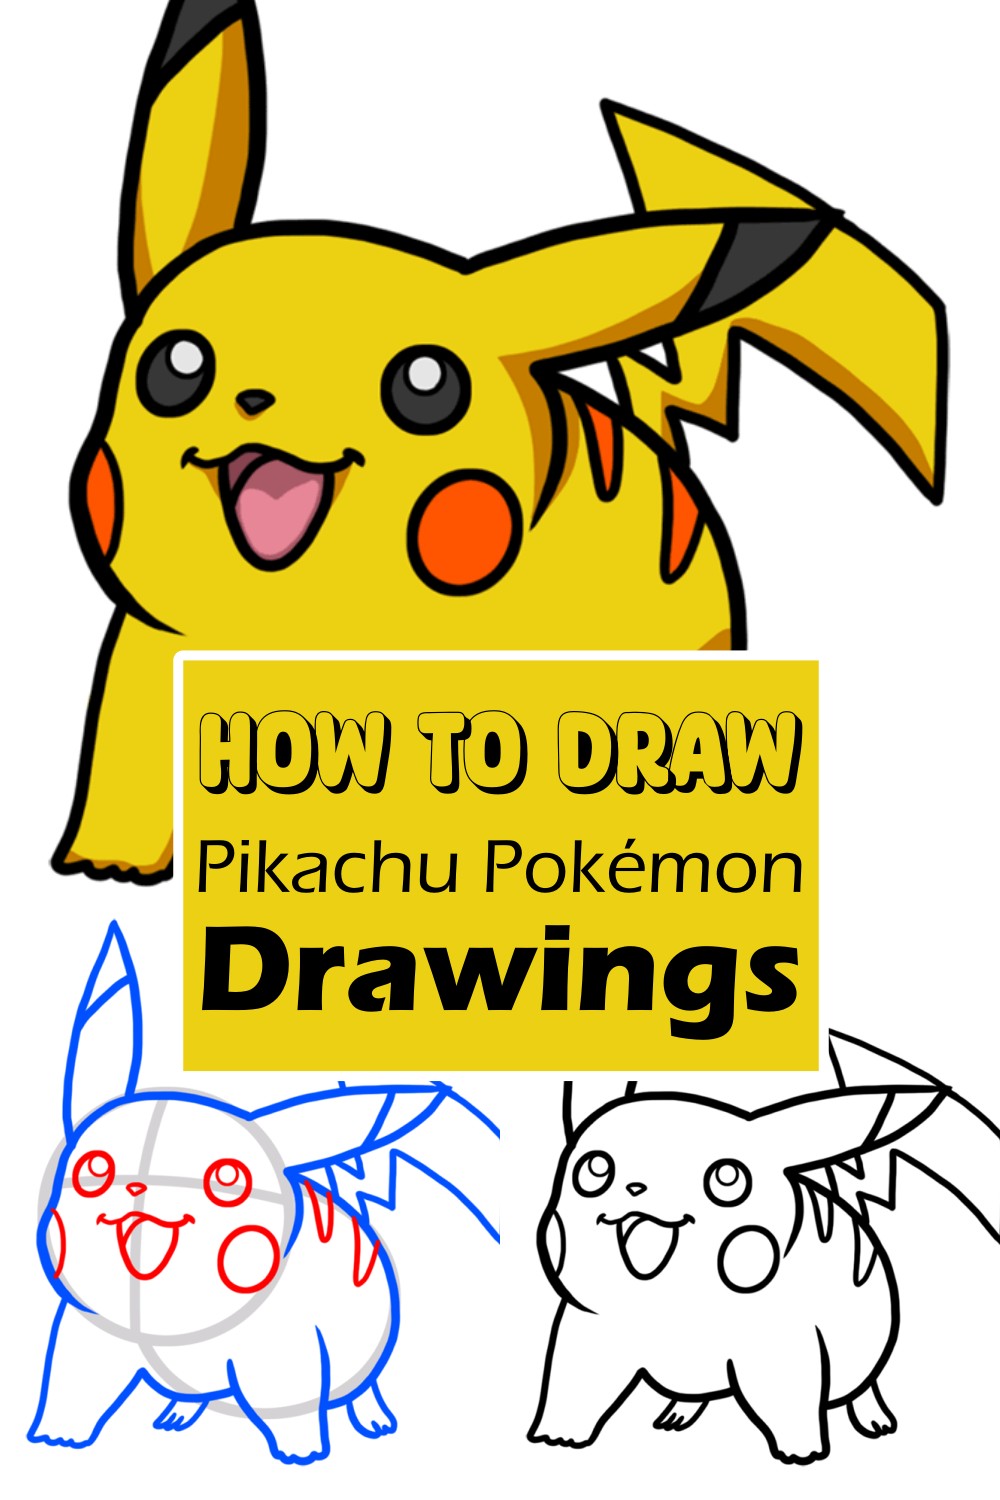 How To Draw Pikachu Pokémon Drawings